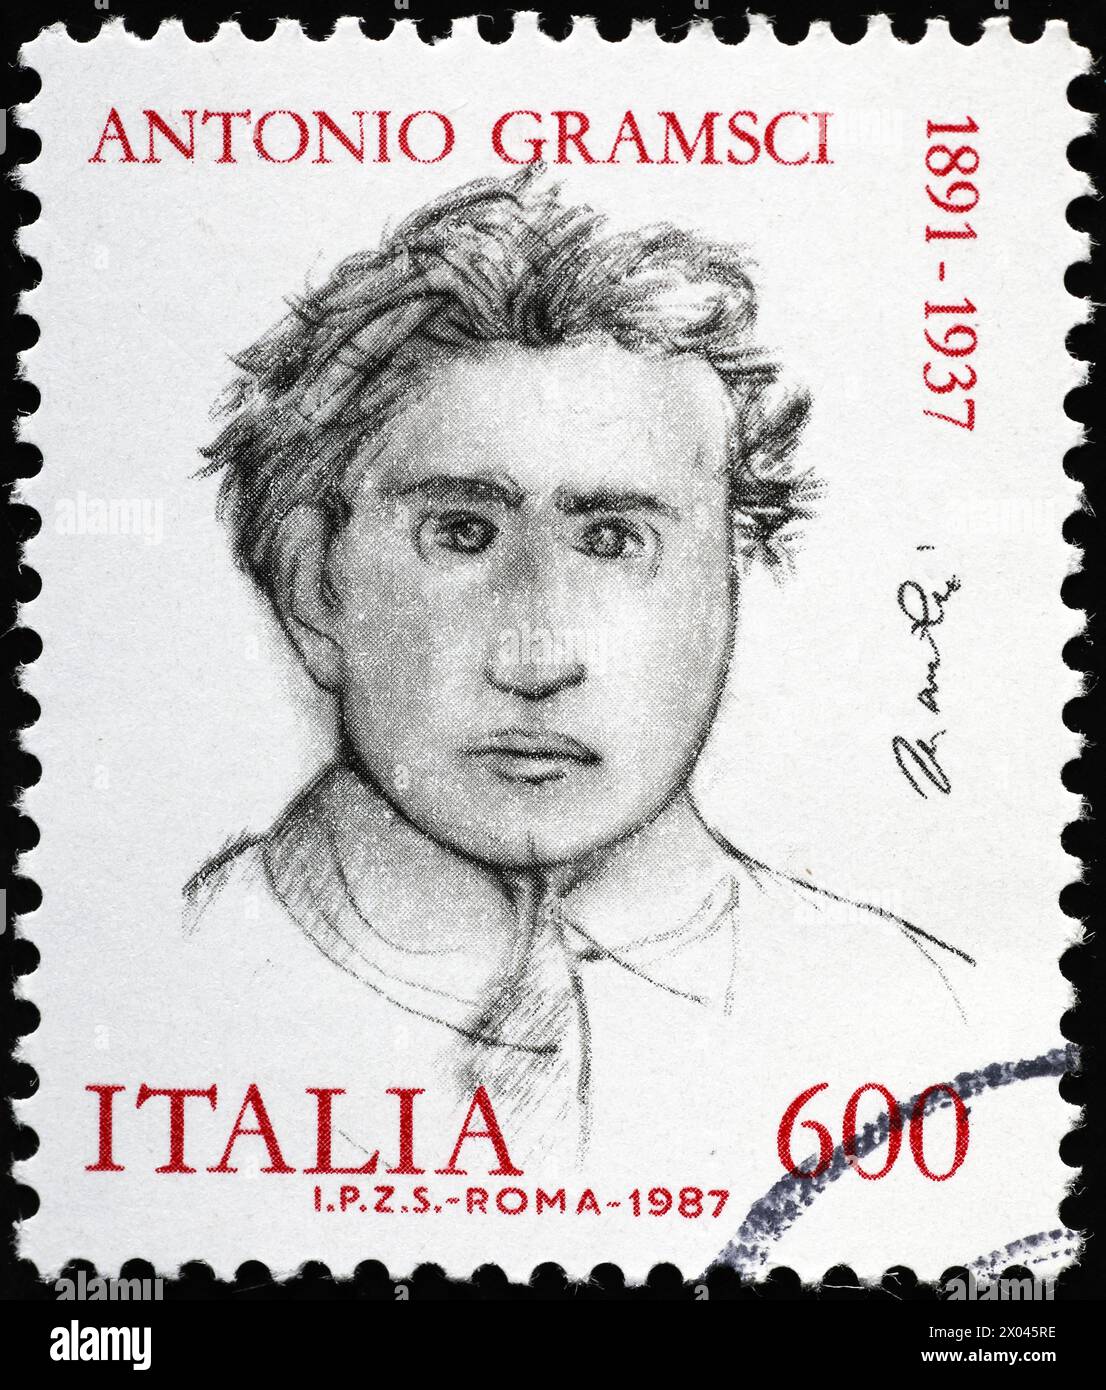 Antonio Gramsci auf italienischer Briefmarke Stockfoto